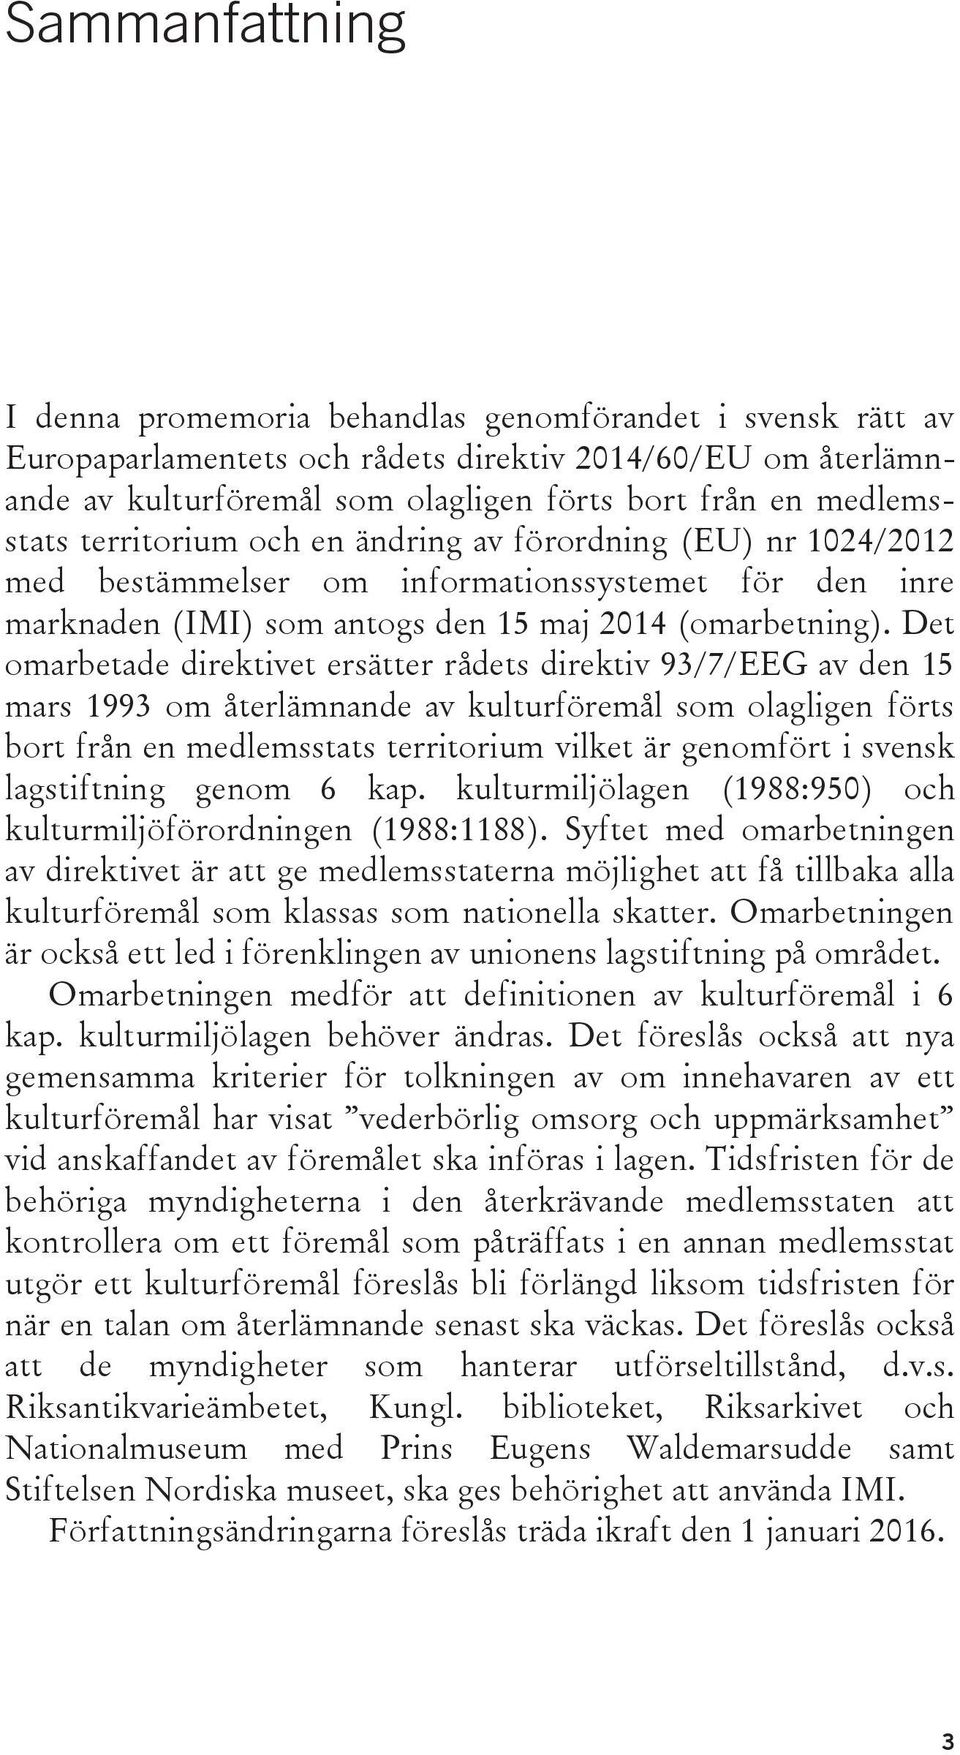 Det omarbetade direktivet ersätter rådets direktiv 93/7/EEG av den 15 mars 1993 om återlämnande av kulturföremål som olagligen förts bort från en medlemsstats territorium vilket är genomfört i svensk